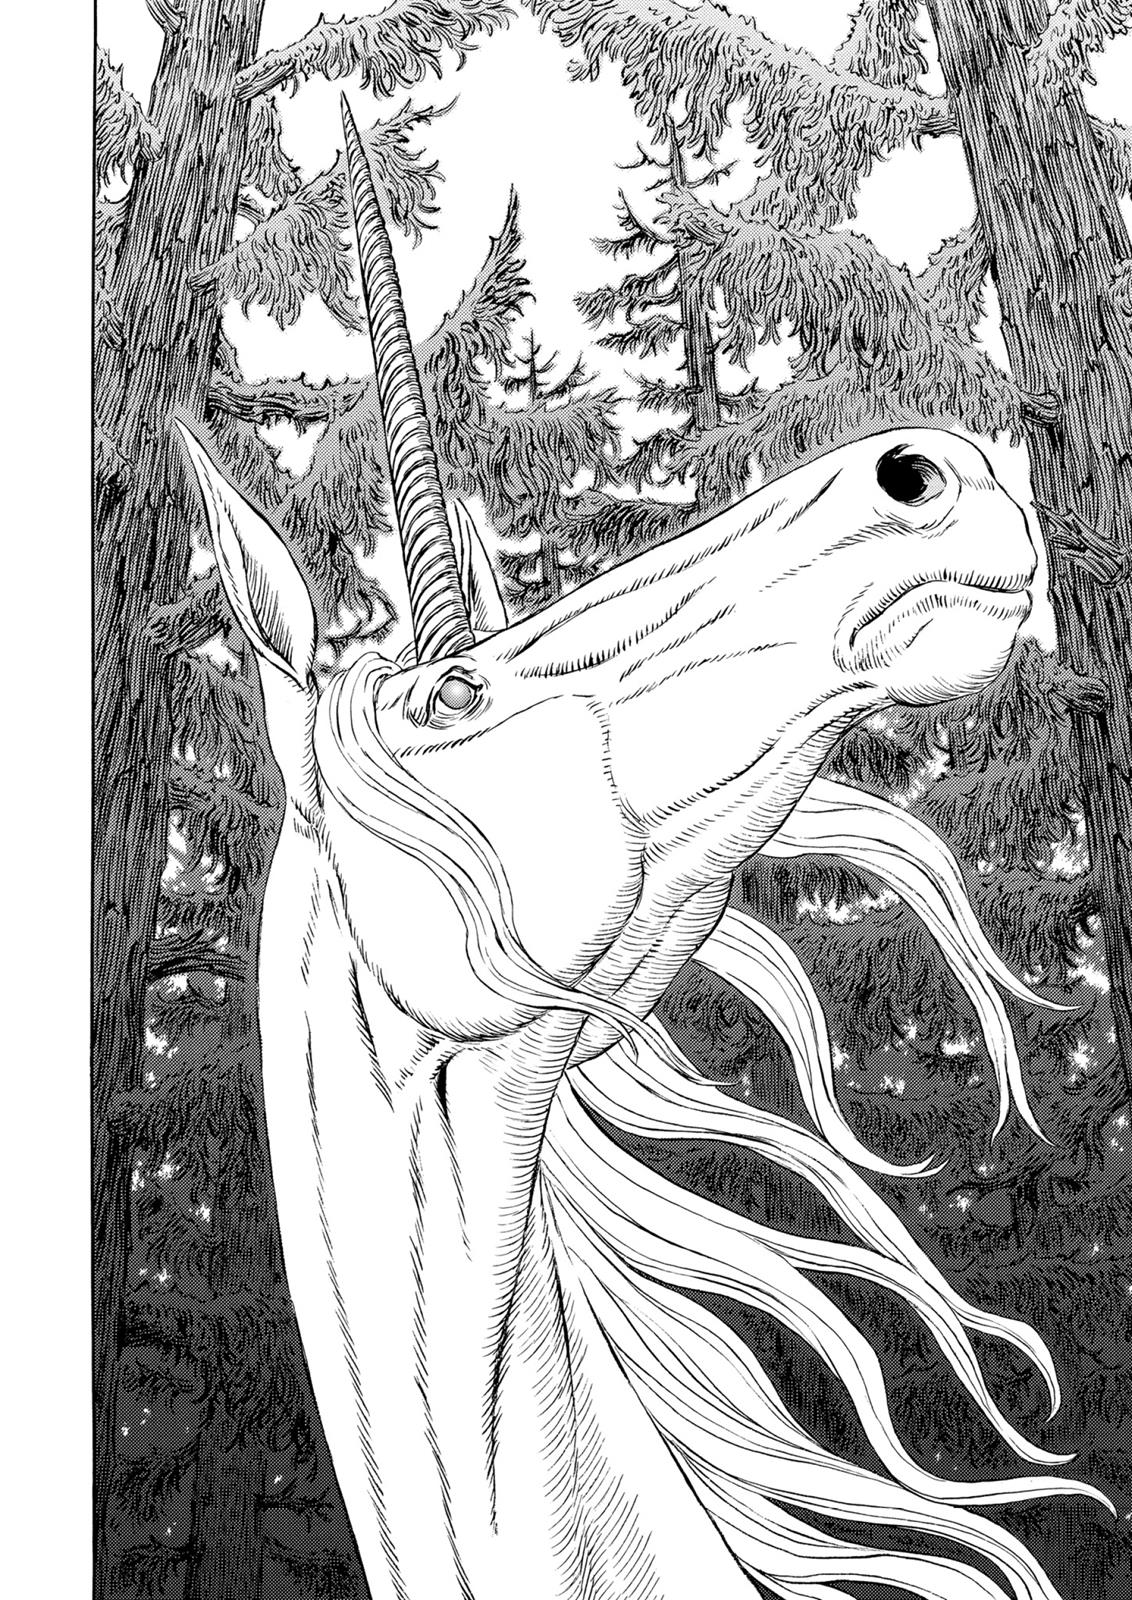 Berserk Manga Chapter 305 image 10